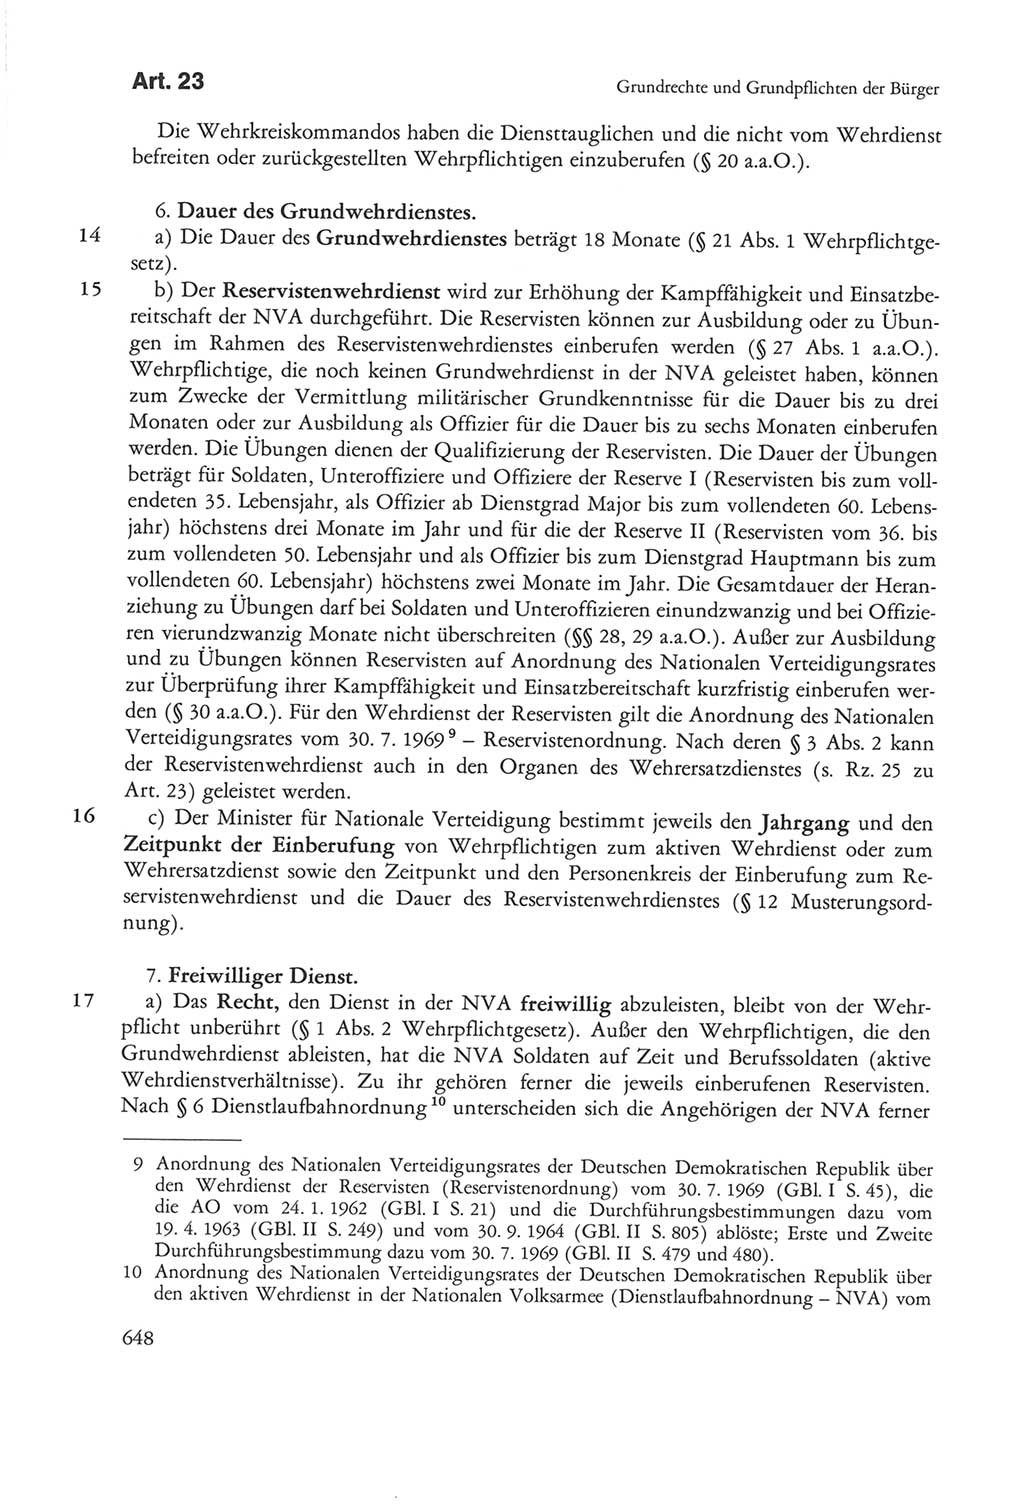 Die sozialistische Verfassung der Deutschen Demokratischen Republik (DDR), Kommentar 1982, Seite 648 (Soz. Verf. DDR Komm. 1982, S. 648)